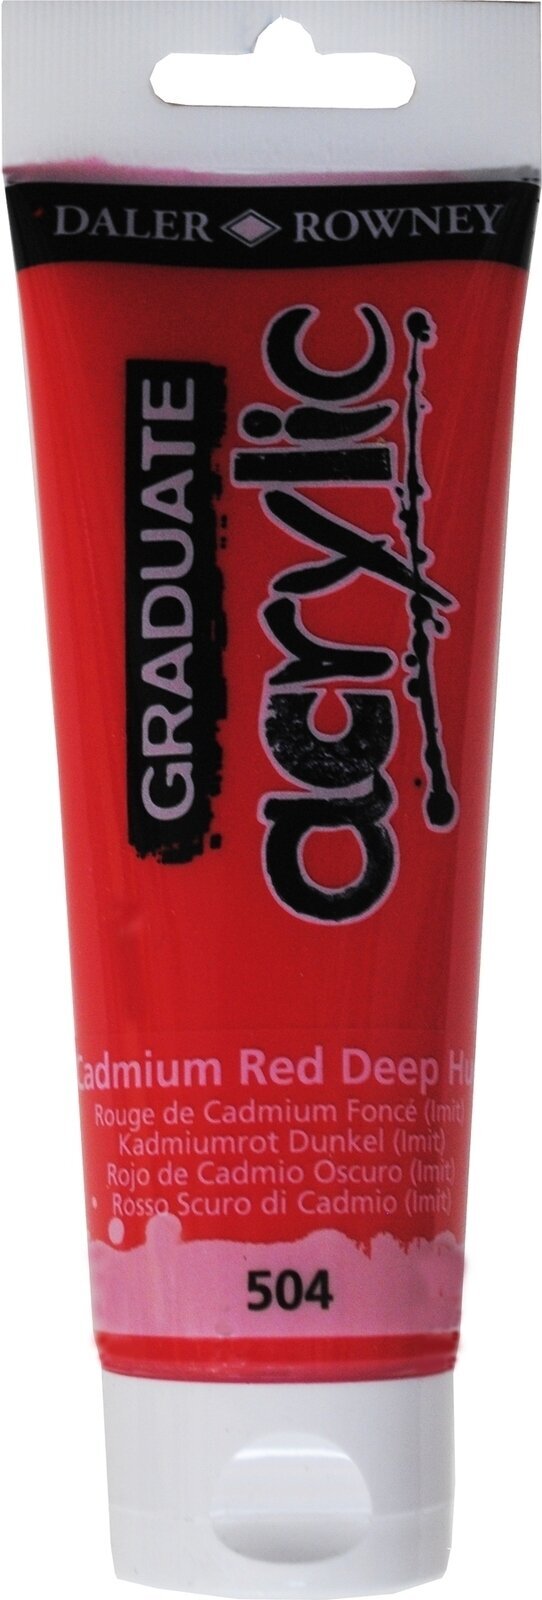 Aκρυλικό Χρώμα Daler Rowney Graduate Ακρυλική μπογιά Cadmium Red Deep Hue 120 ml 1 τεμ.